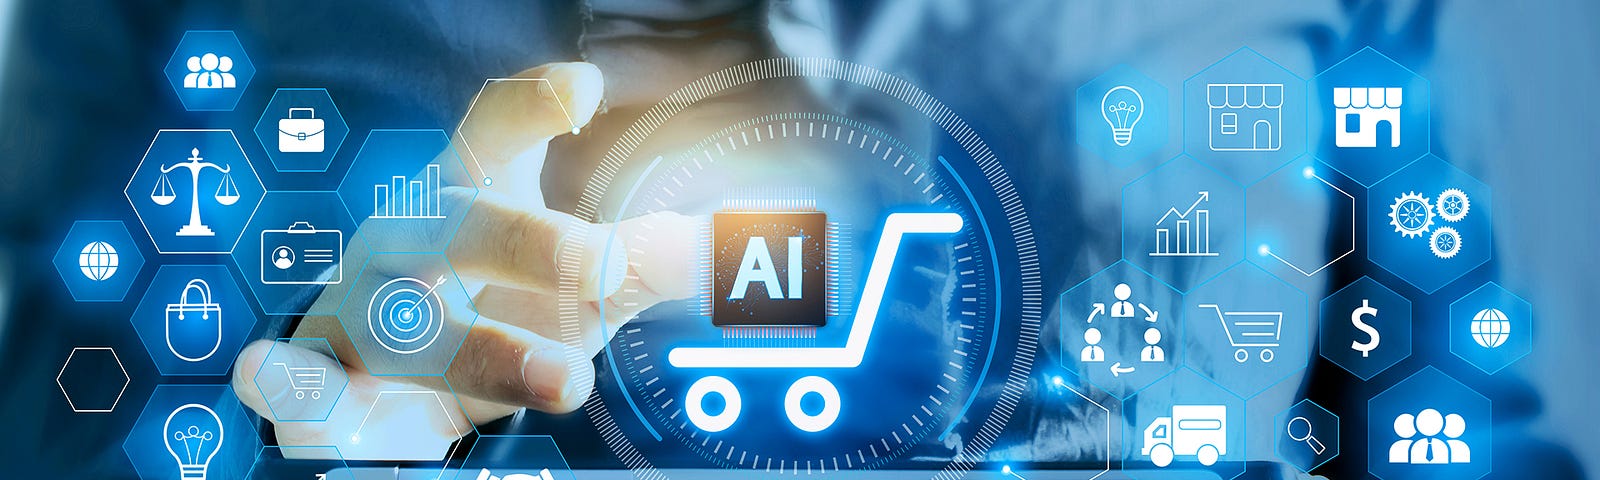 AI E-Commerce Platform Development